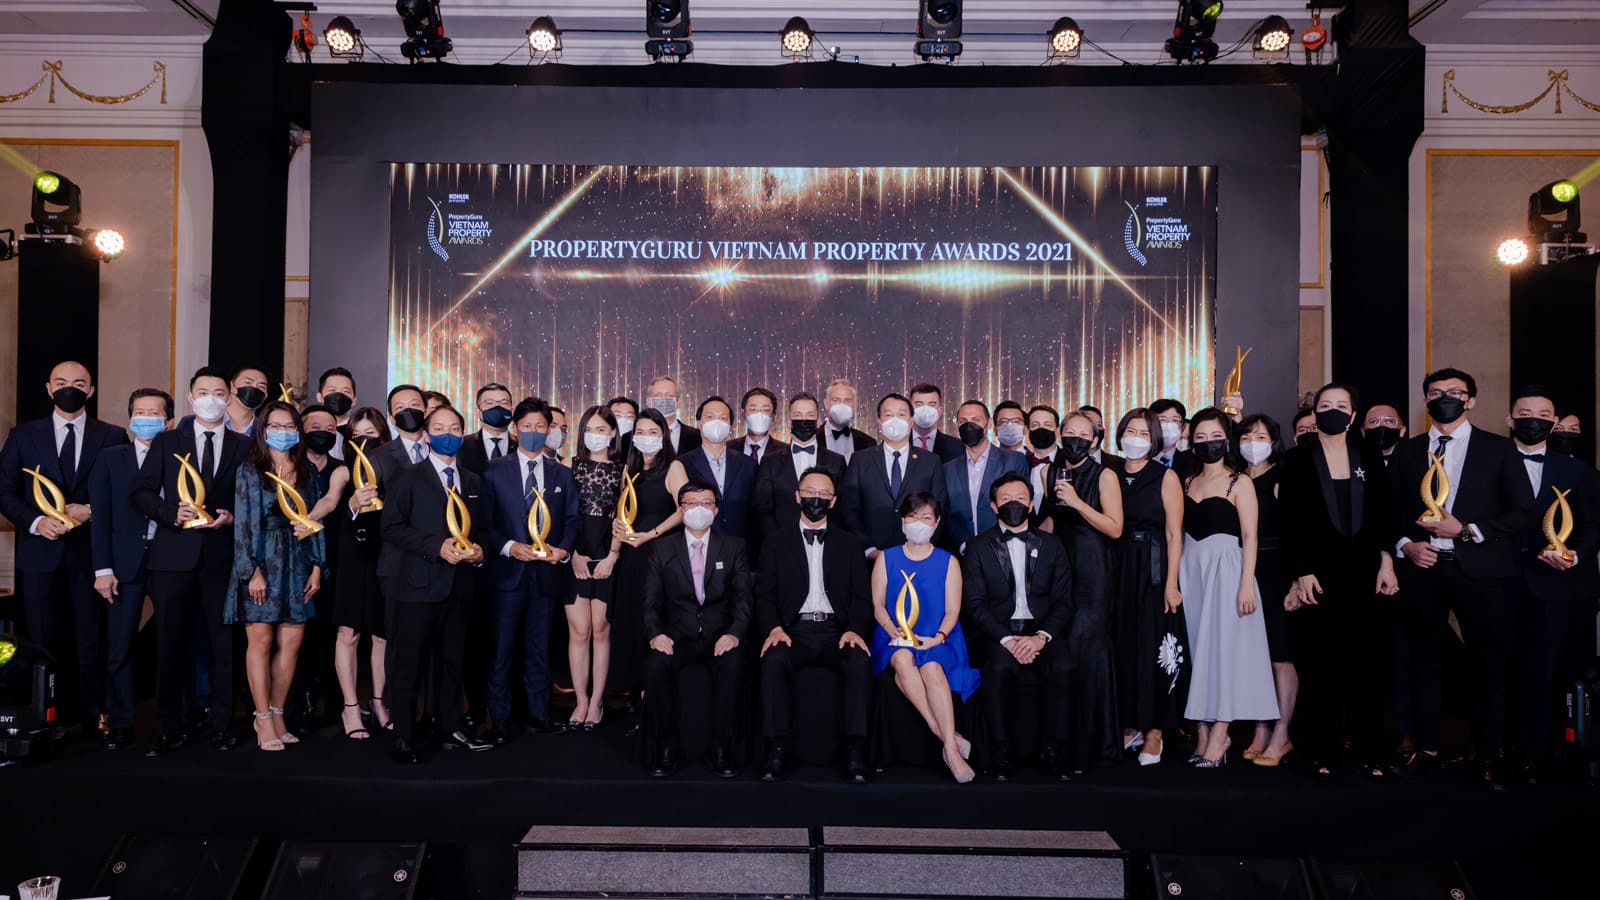 Giải thưởng Bất động sản Việt Nam PropertyGuru lần thứ 8 chính thức khởi động